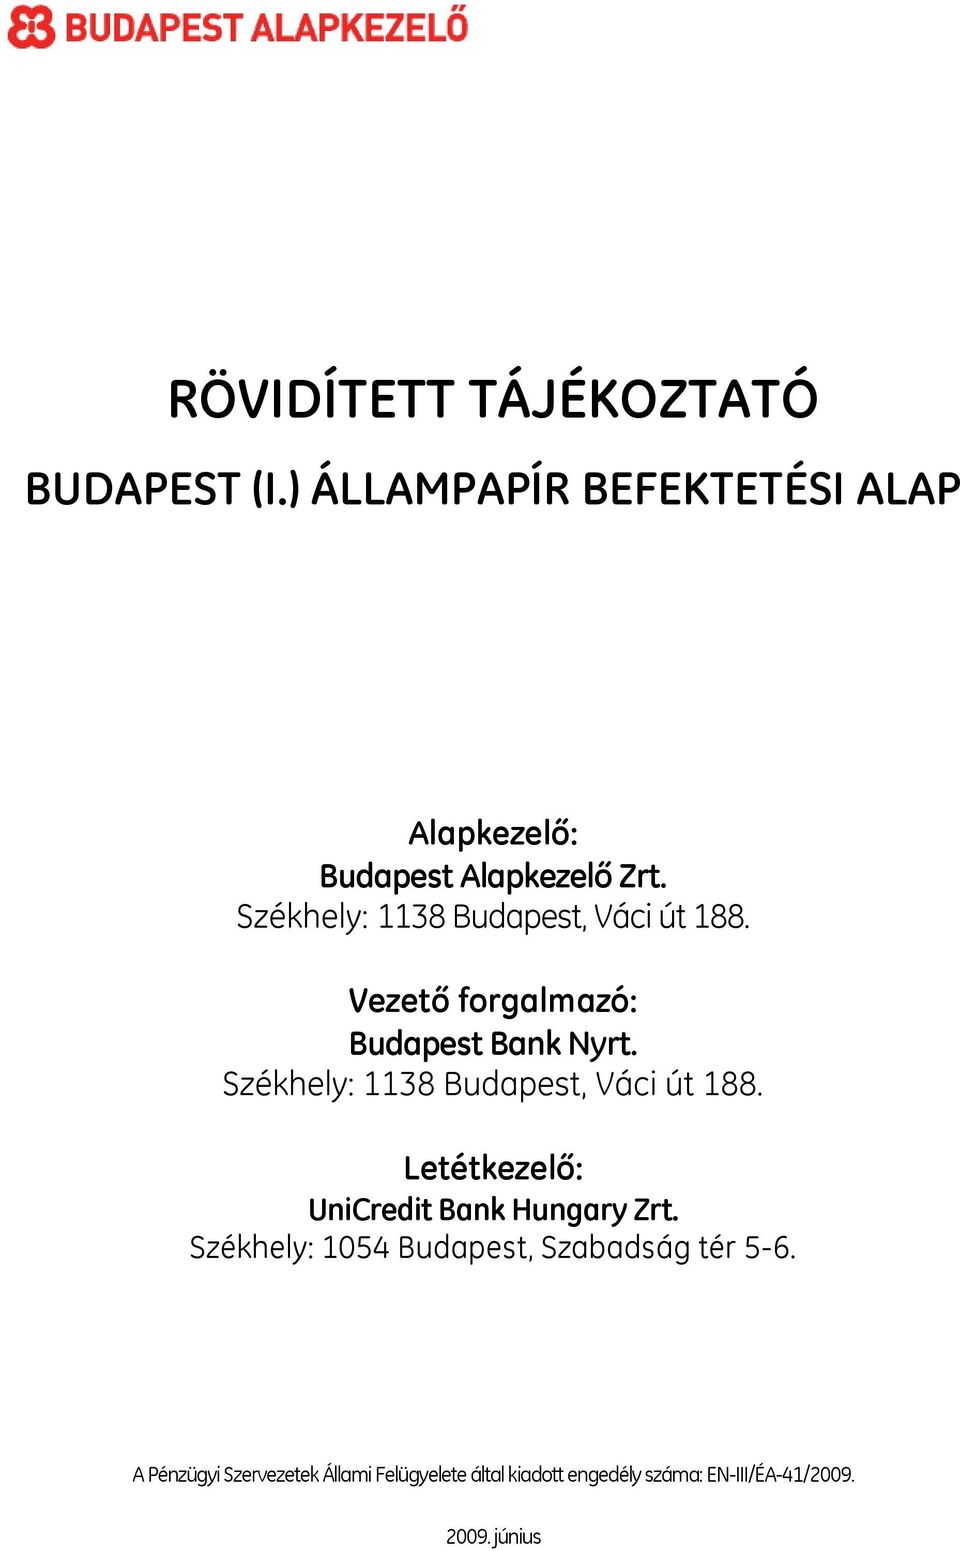 Székhely: 1138 Budapest, Váci út 188. Letétkezelő: UniCredit Bank Hungary Zrt.